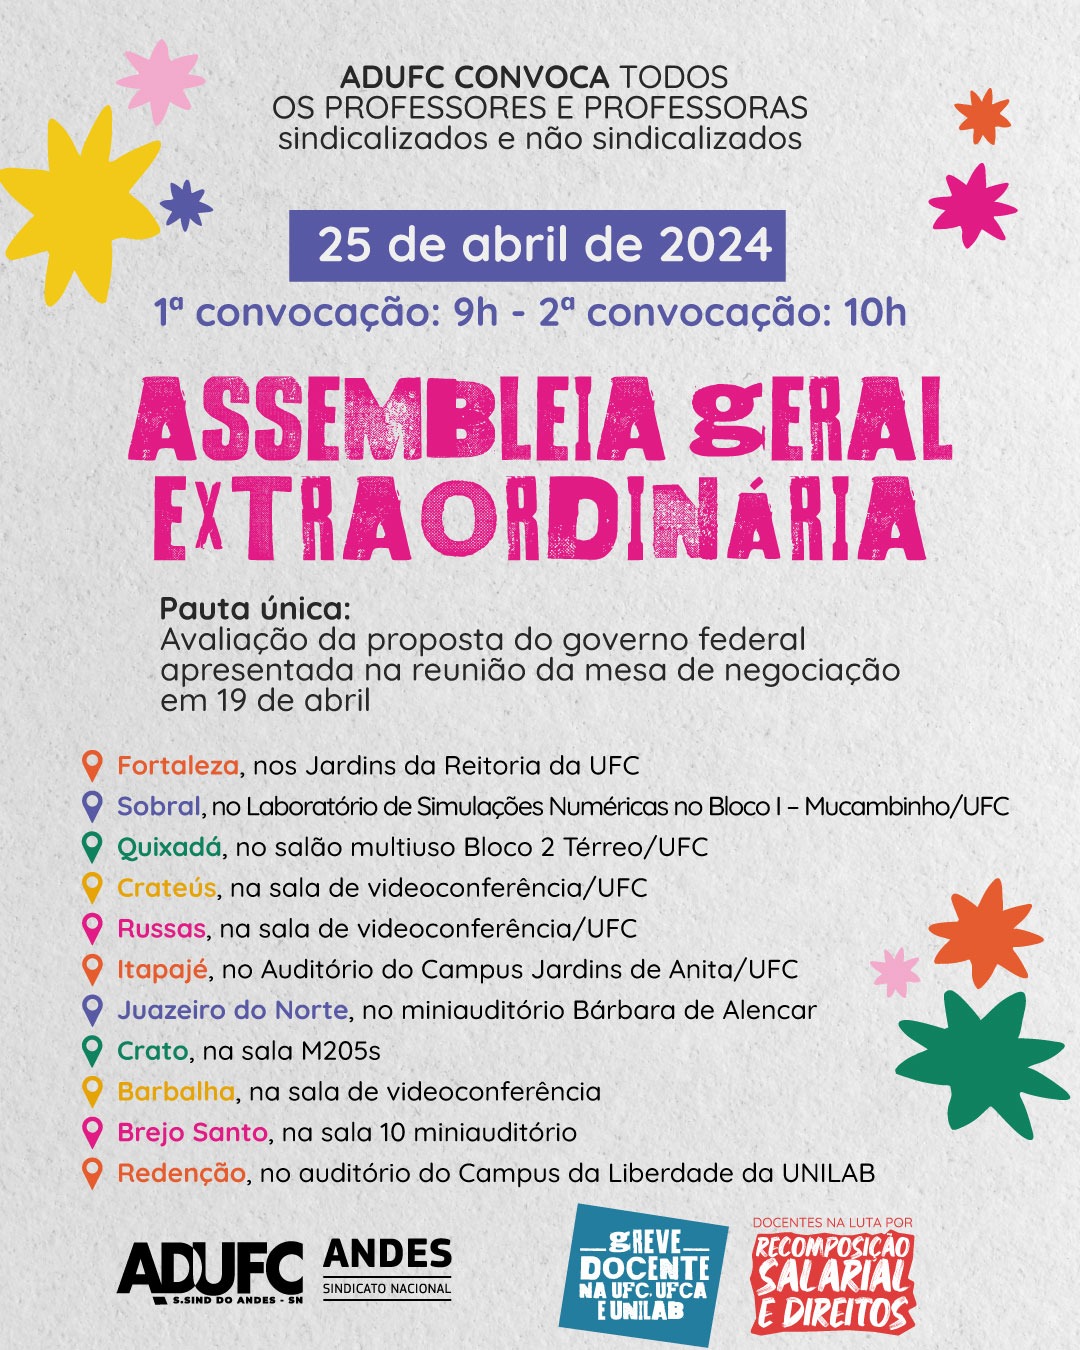 GREVE DA EDUCAÇÃO – ADUFC convida docentes para Assembleia Geral amanhã (25) sobre proposta de reajuste do governo